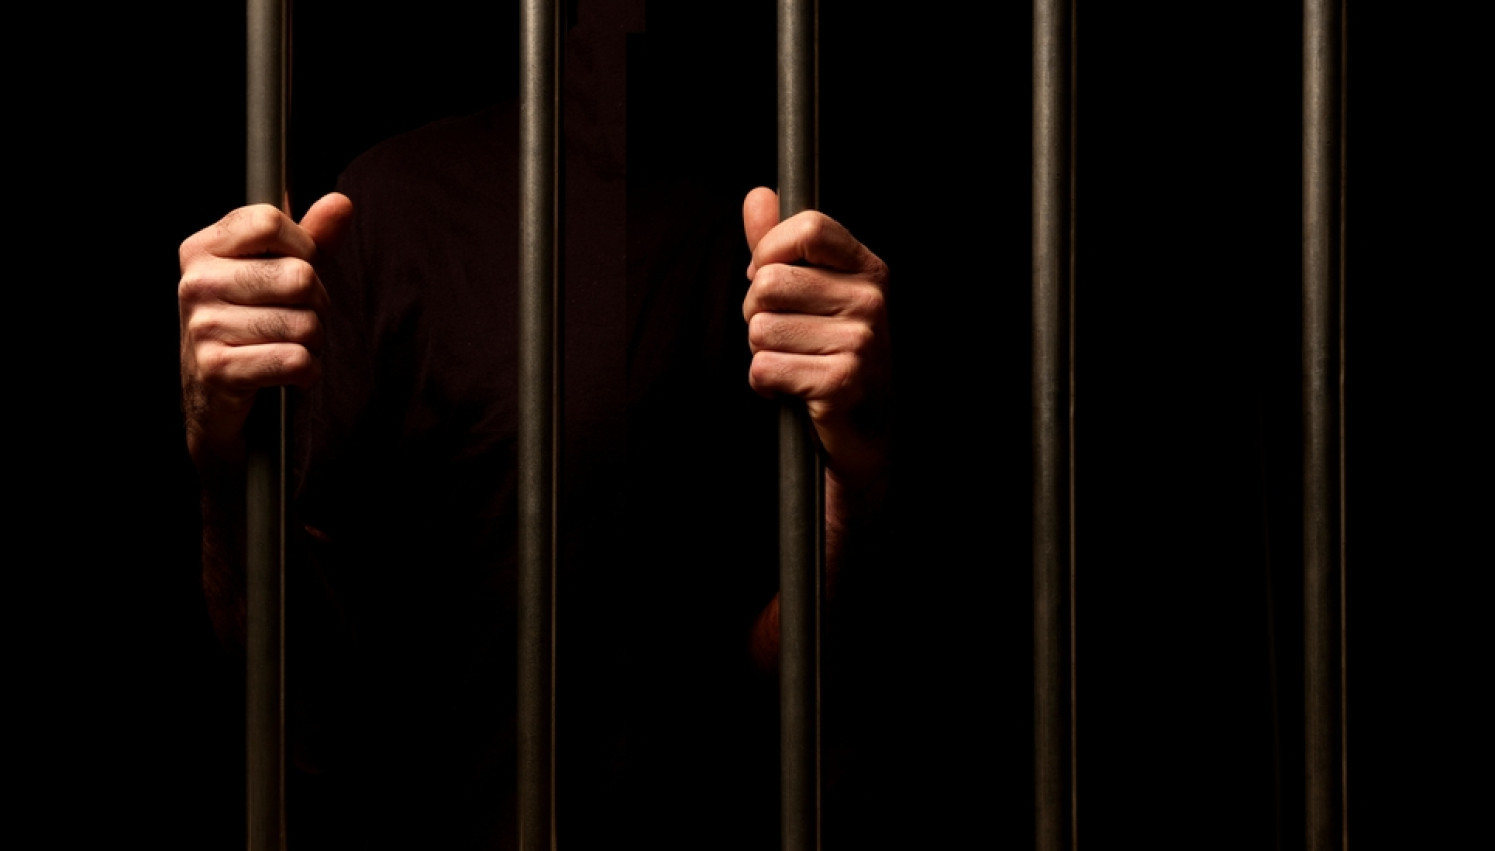 13 čuvara u zatvoru za maloletnike privedeno zbog mučenja